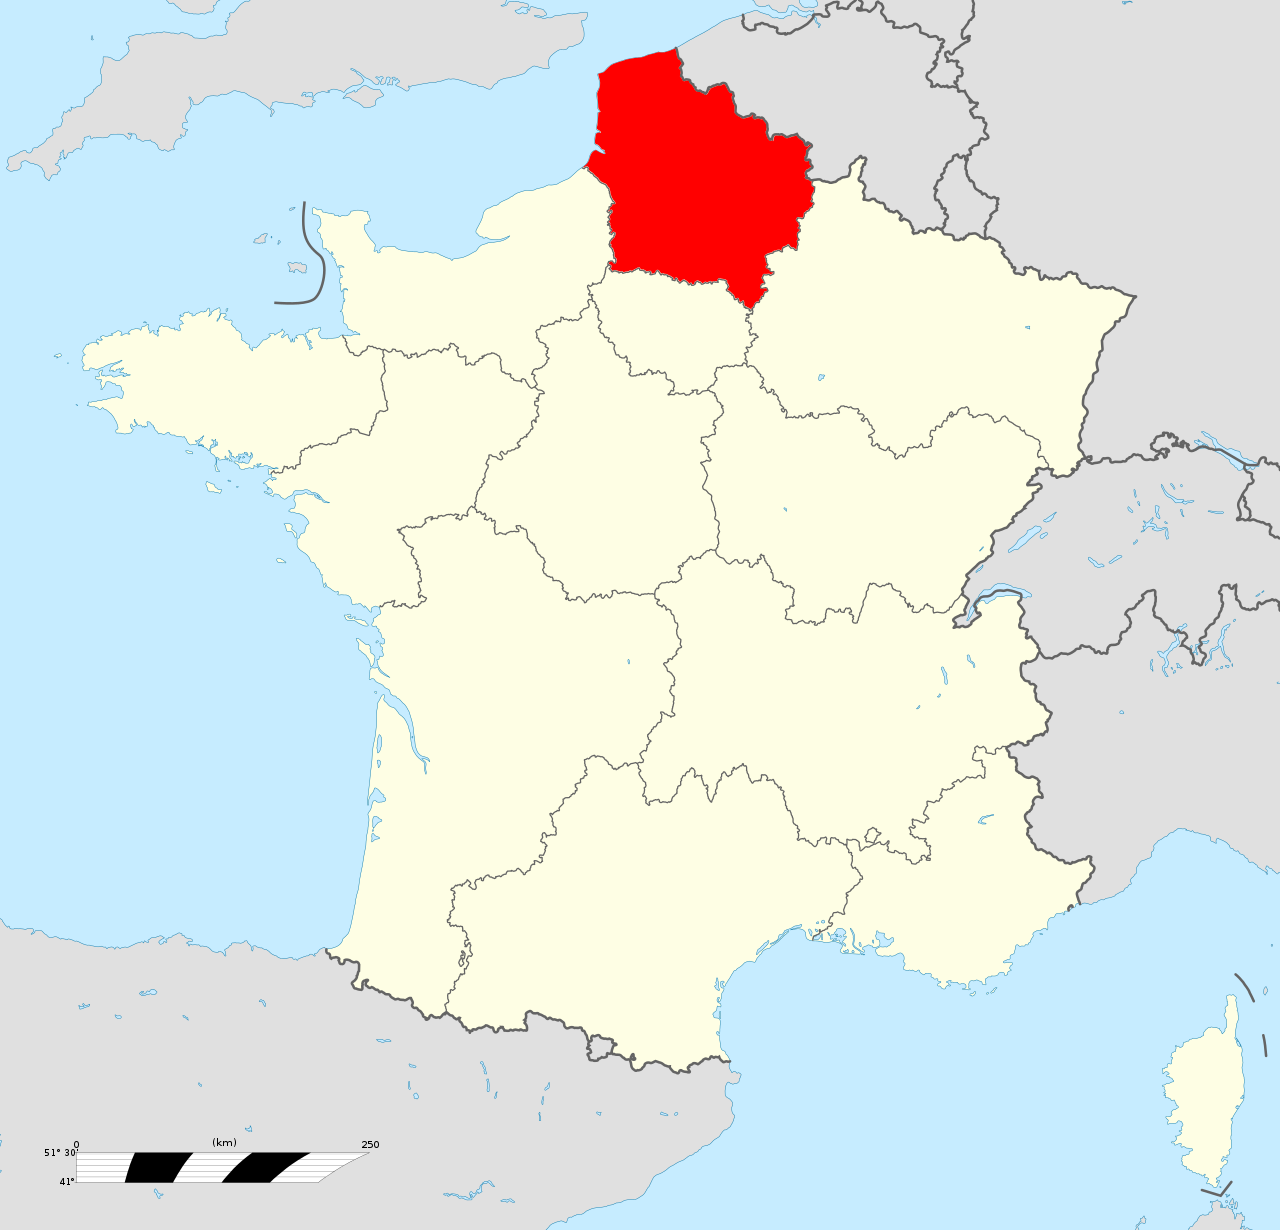 Winter House Urbex locatie in of rond de regio Hauts-de-France (Nauw van Calais), France